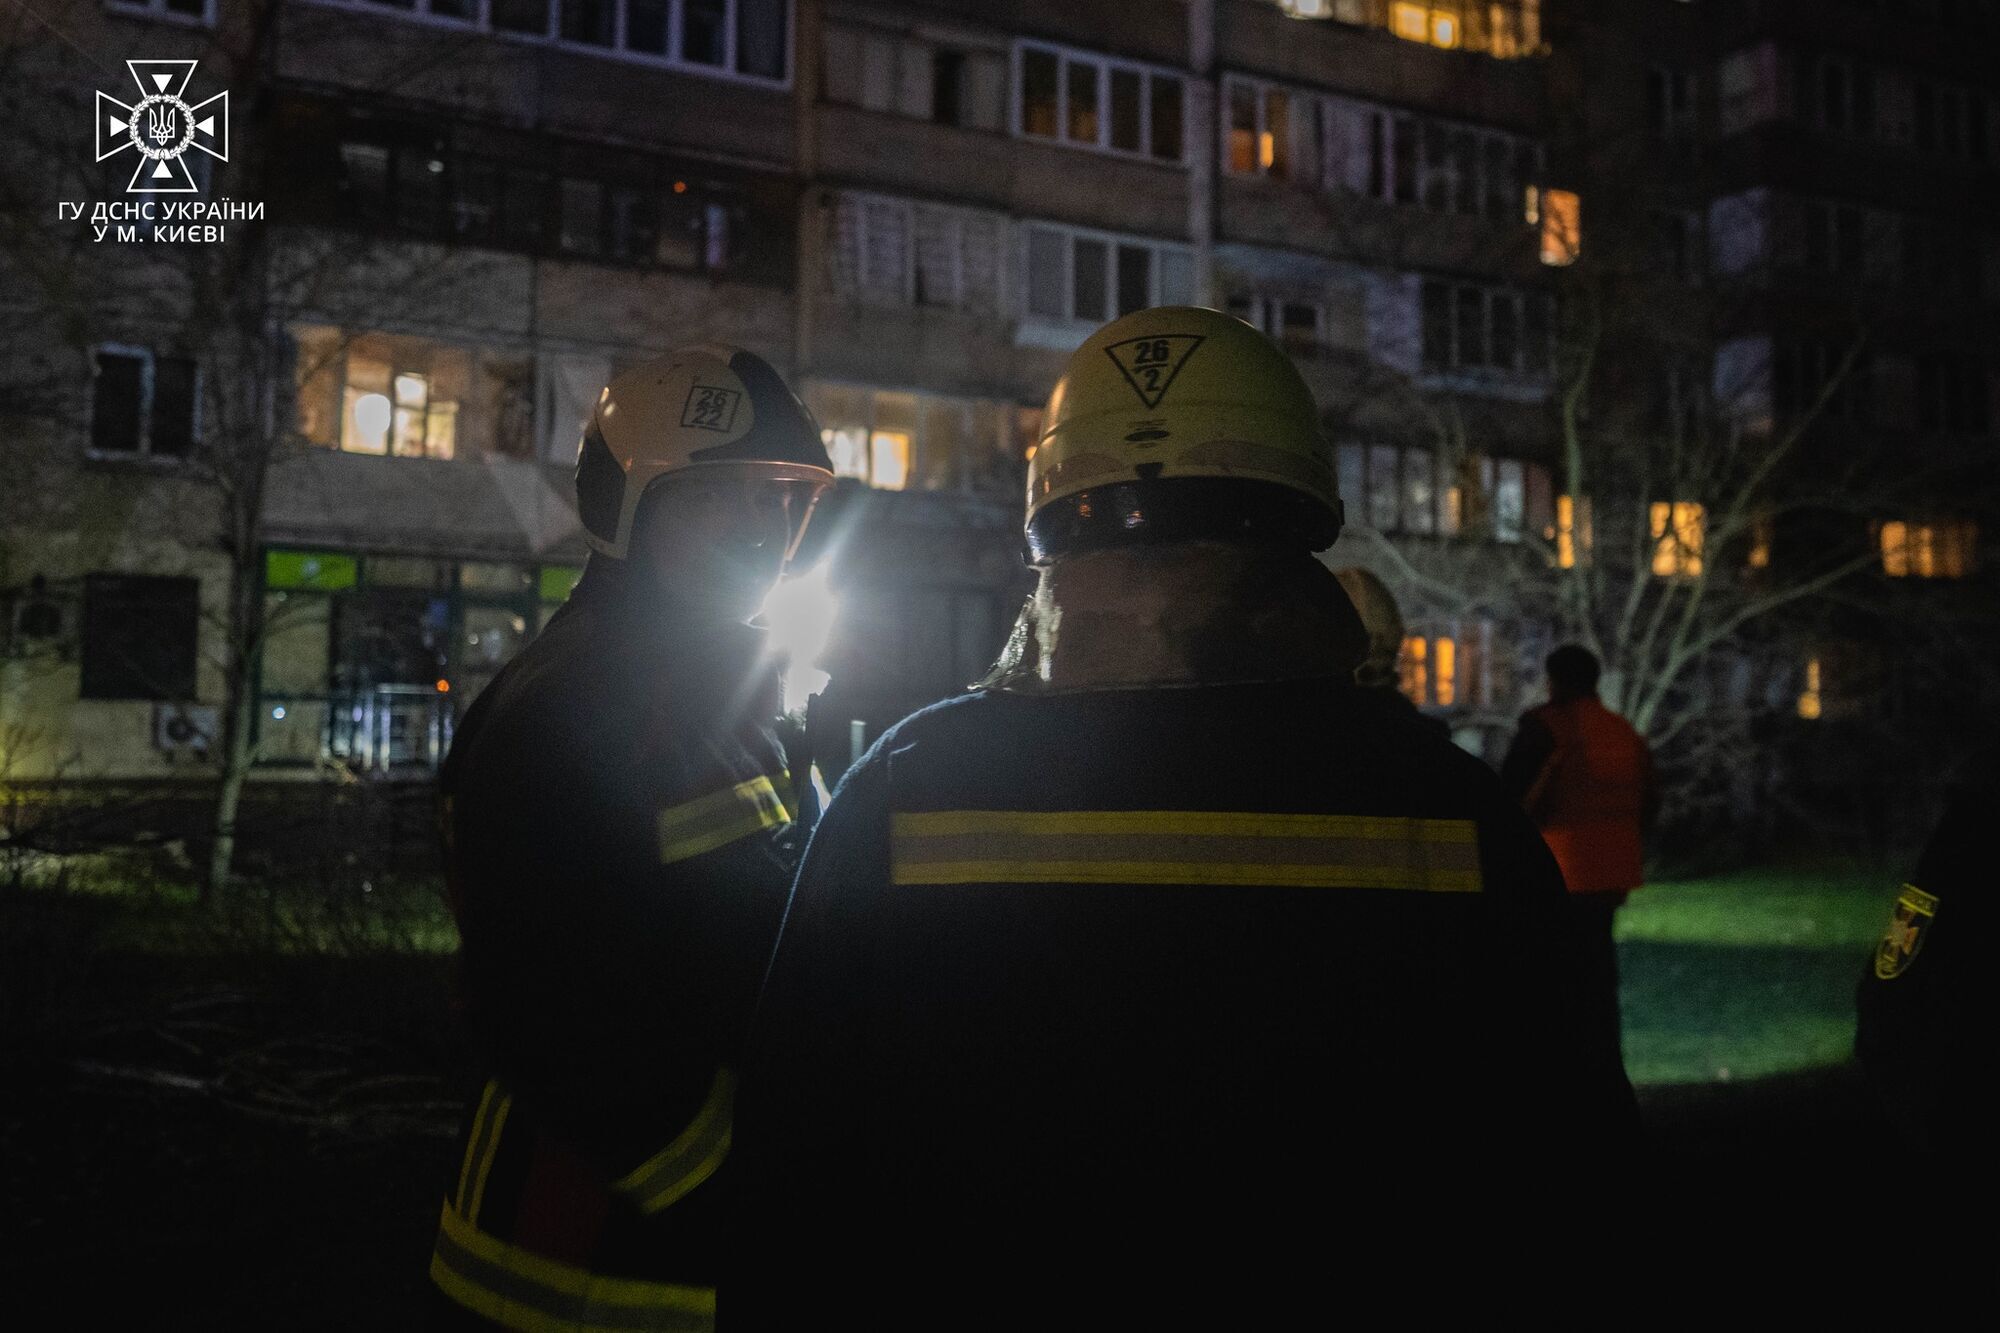 В Киеве прогремели взрывы, обломки Shahed-136 упали на дорогу: есть пострадавший. Фото